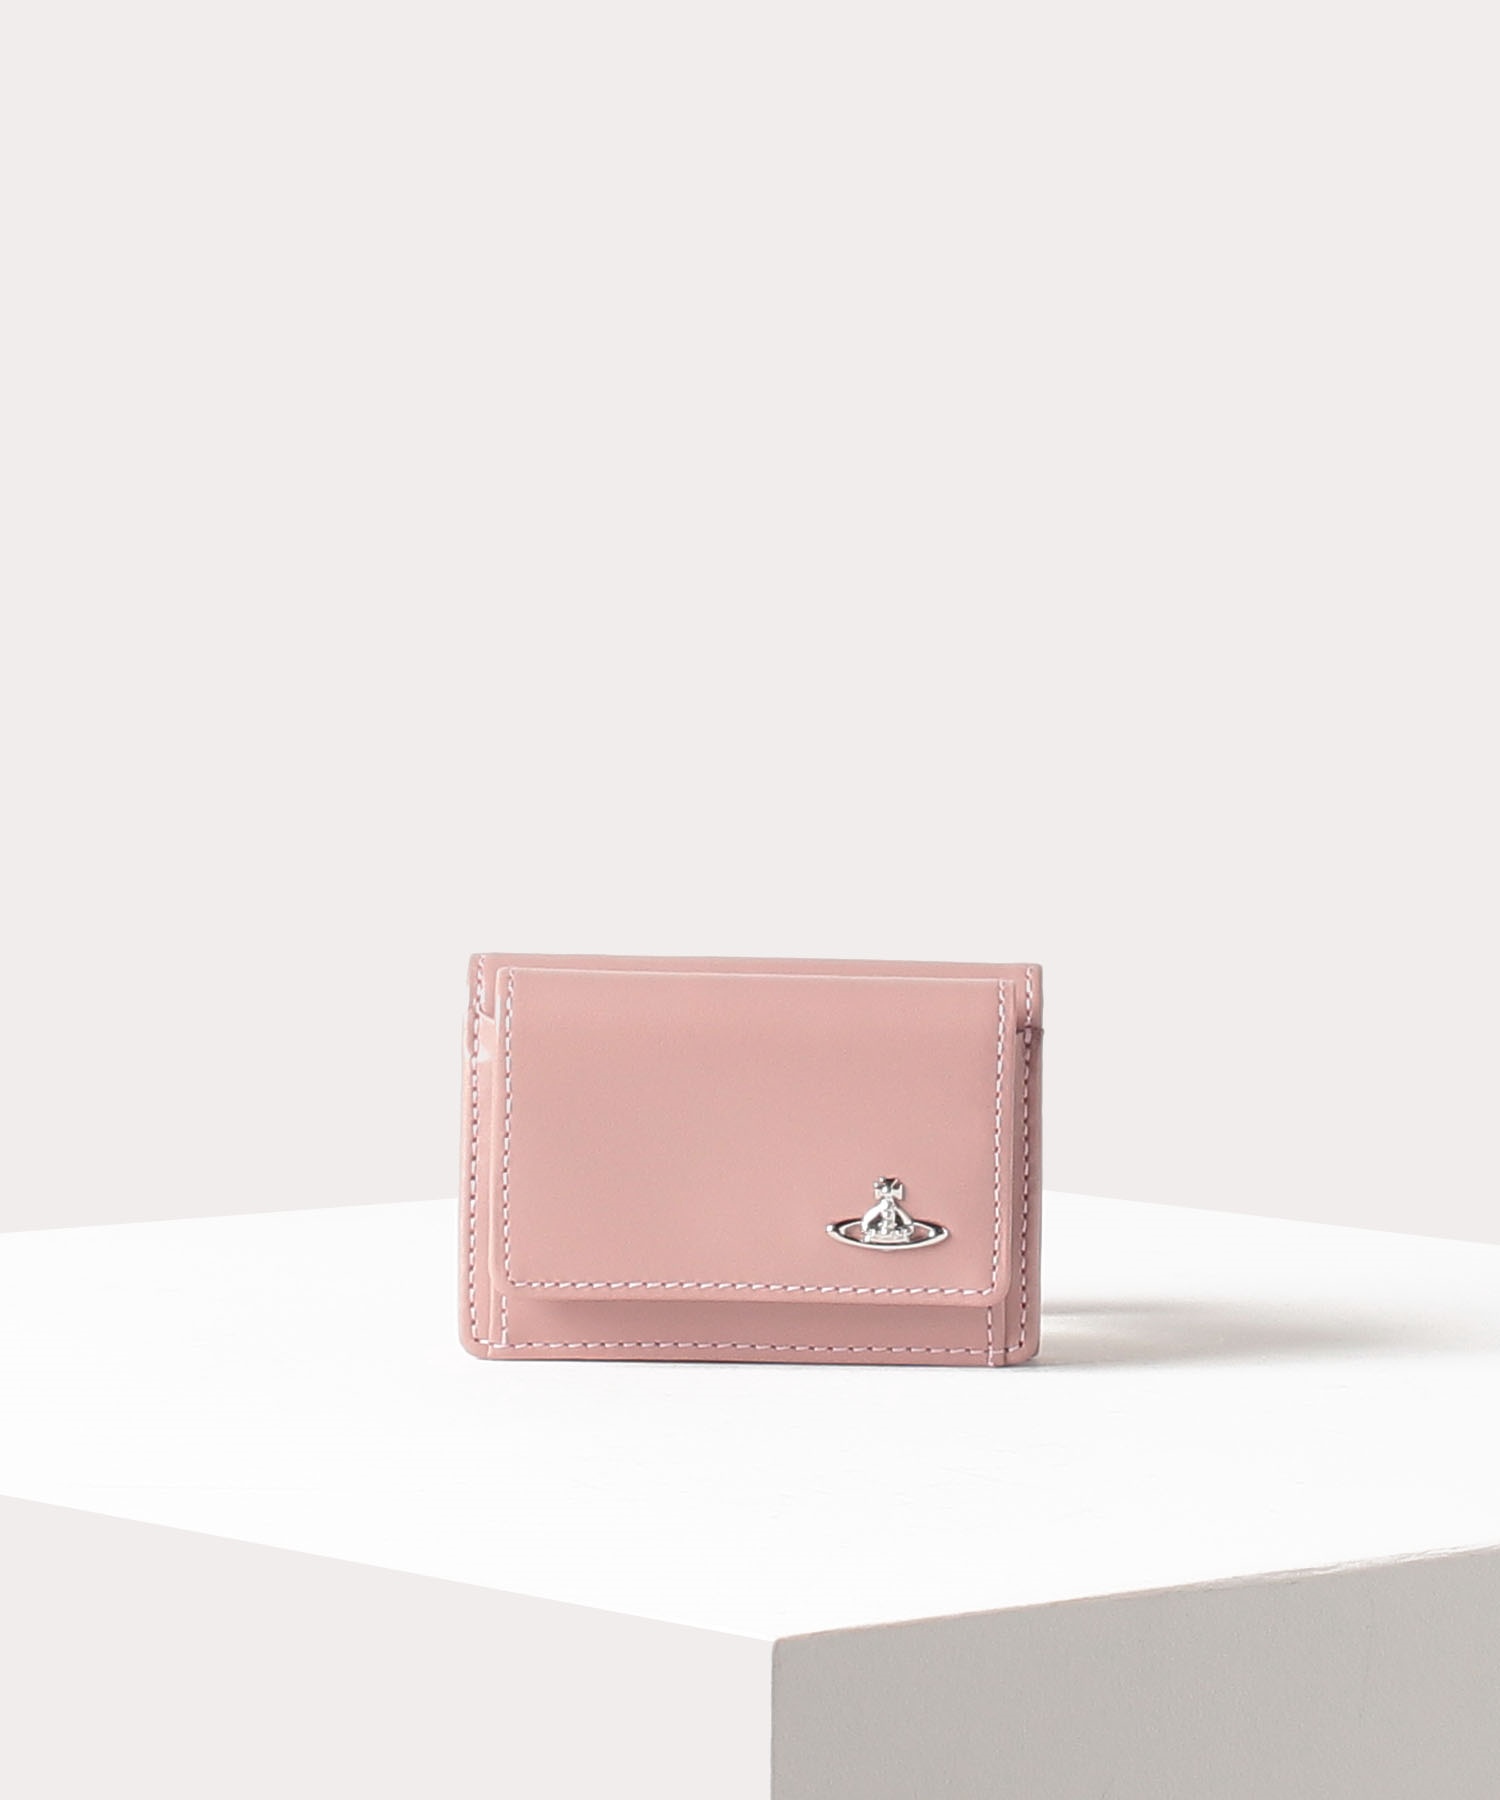 人気のミニ財布はVivienne WestwoodのWATER ORBです